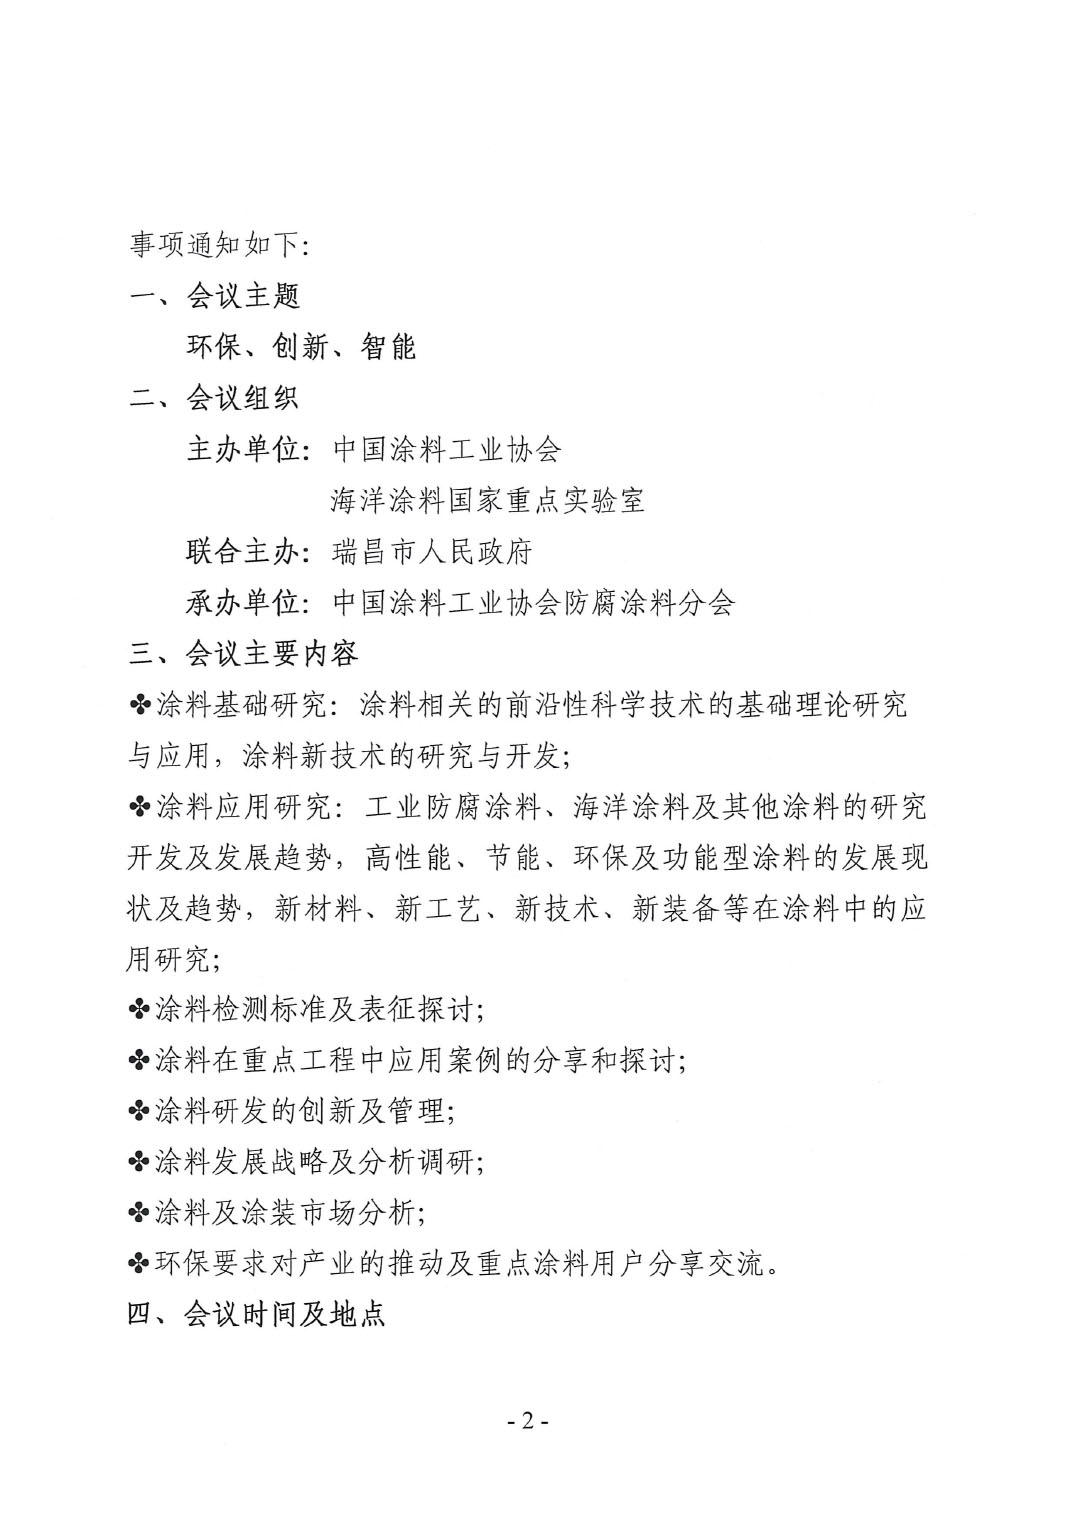 2023年中国涂料工业协会防腐涂料分会年会预通知20231025(1)-2